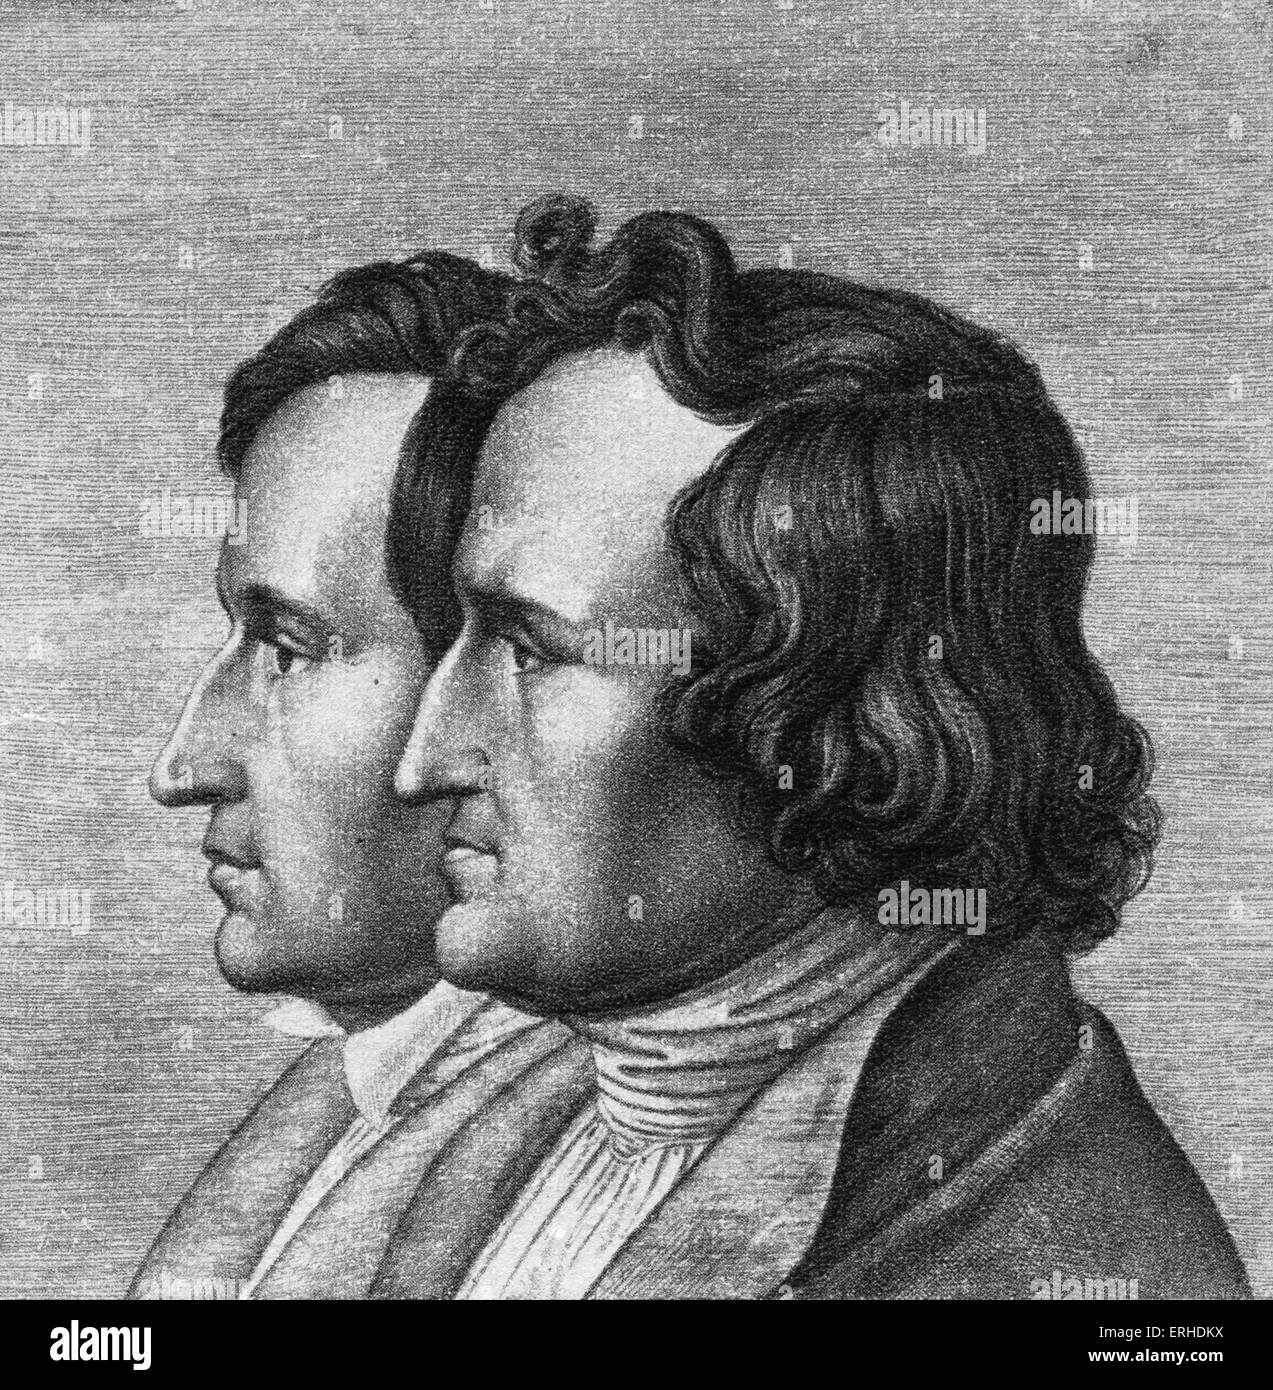 Jacob et Wilhelm Grimm - Frères Grimm auteurs allemands de contes, chants, contes en fonction de pré-chrétien allemand Banque D'Images